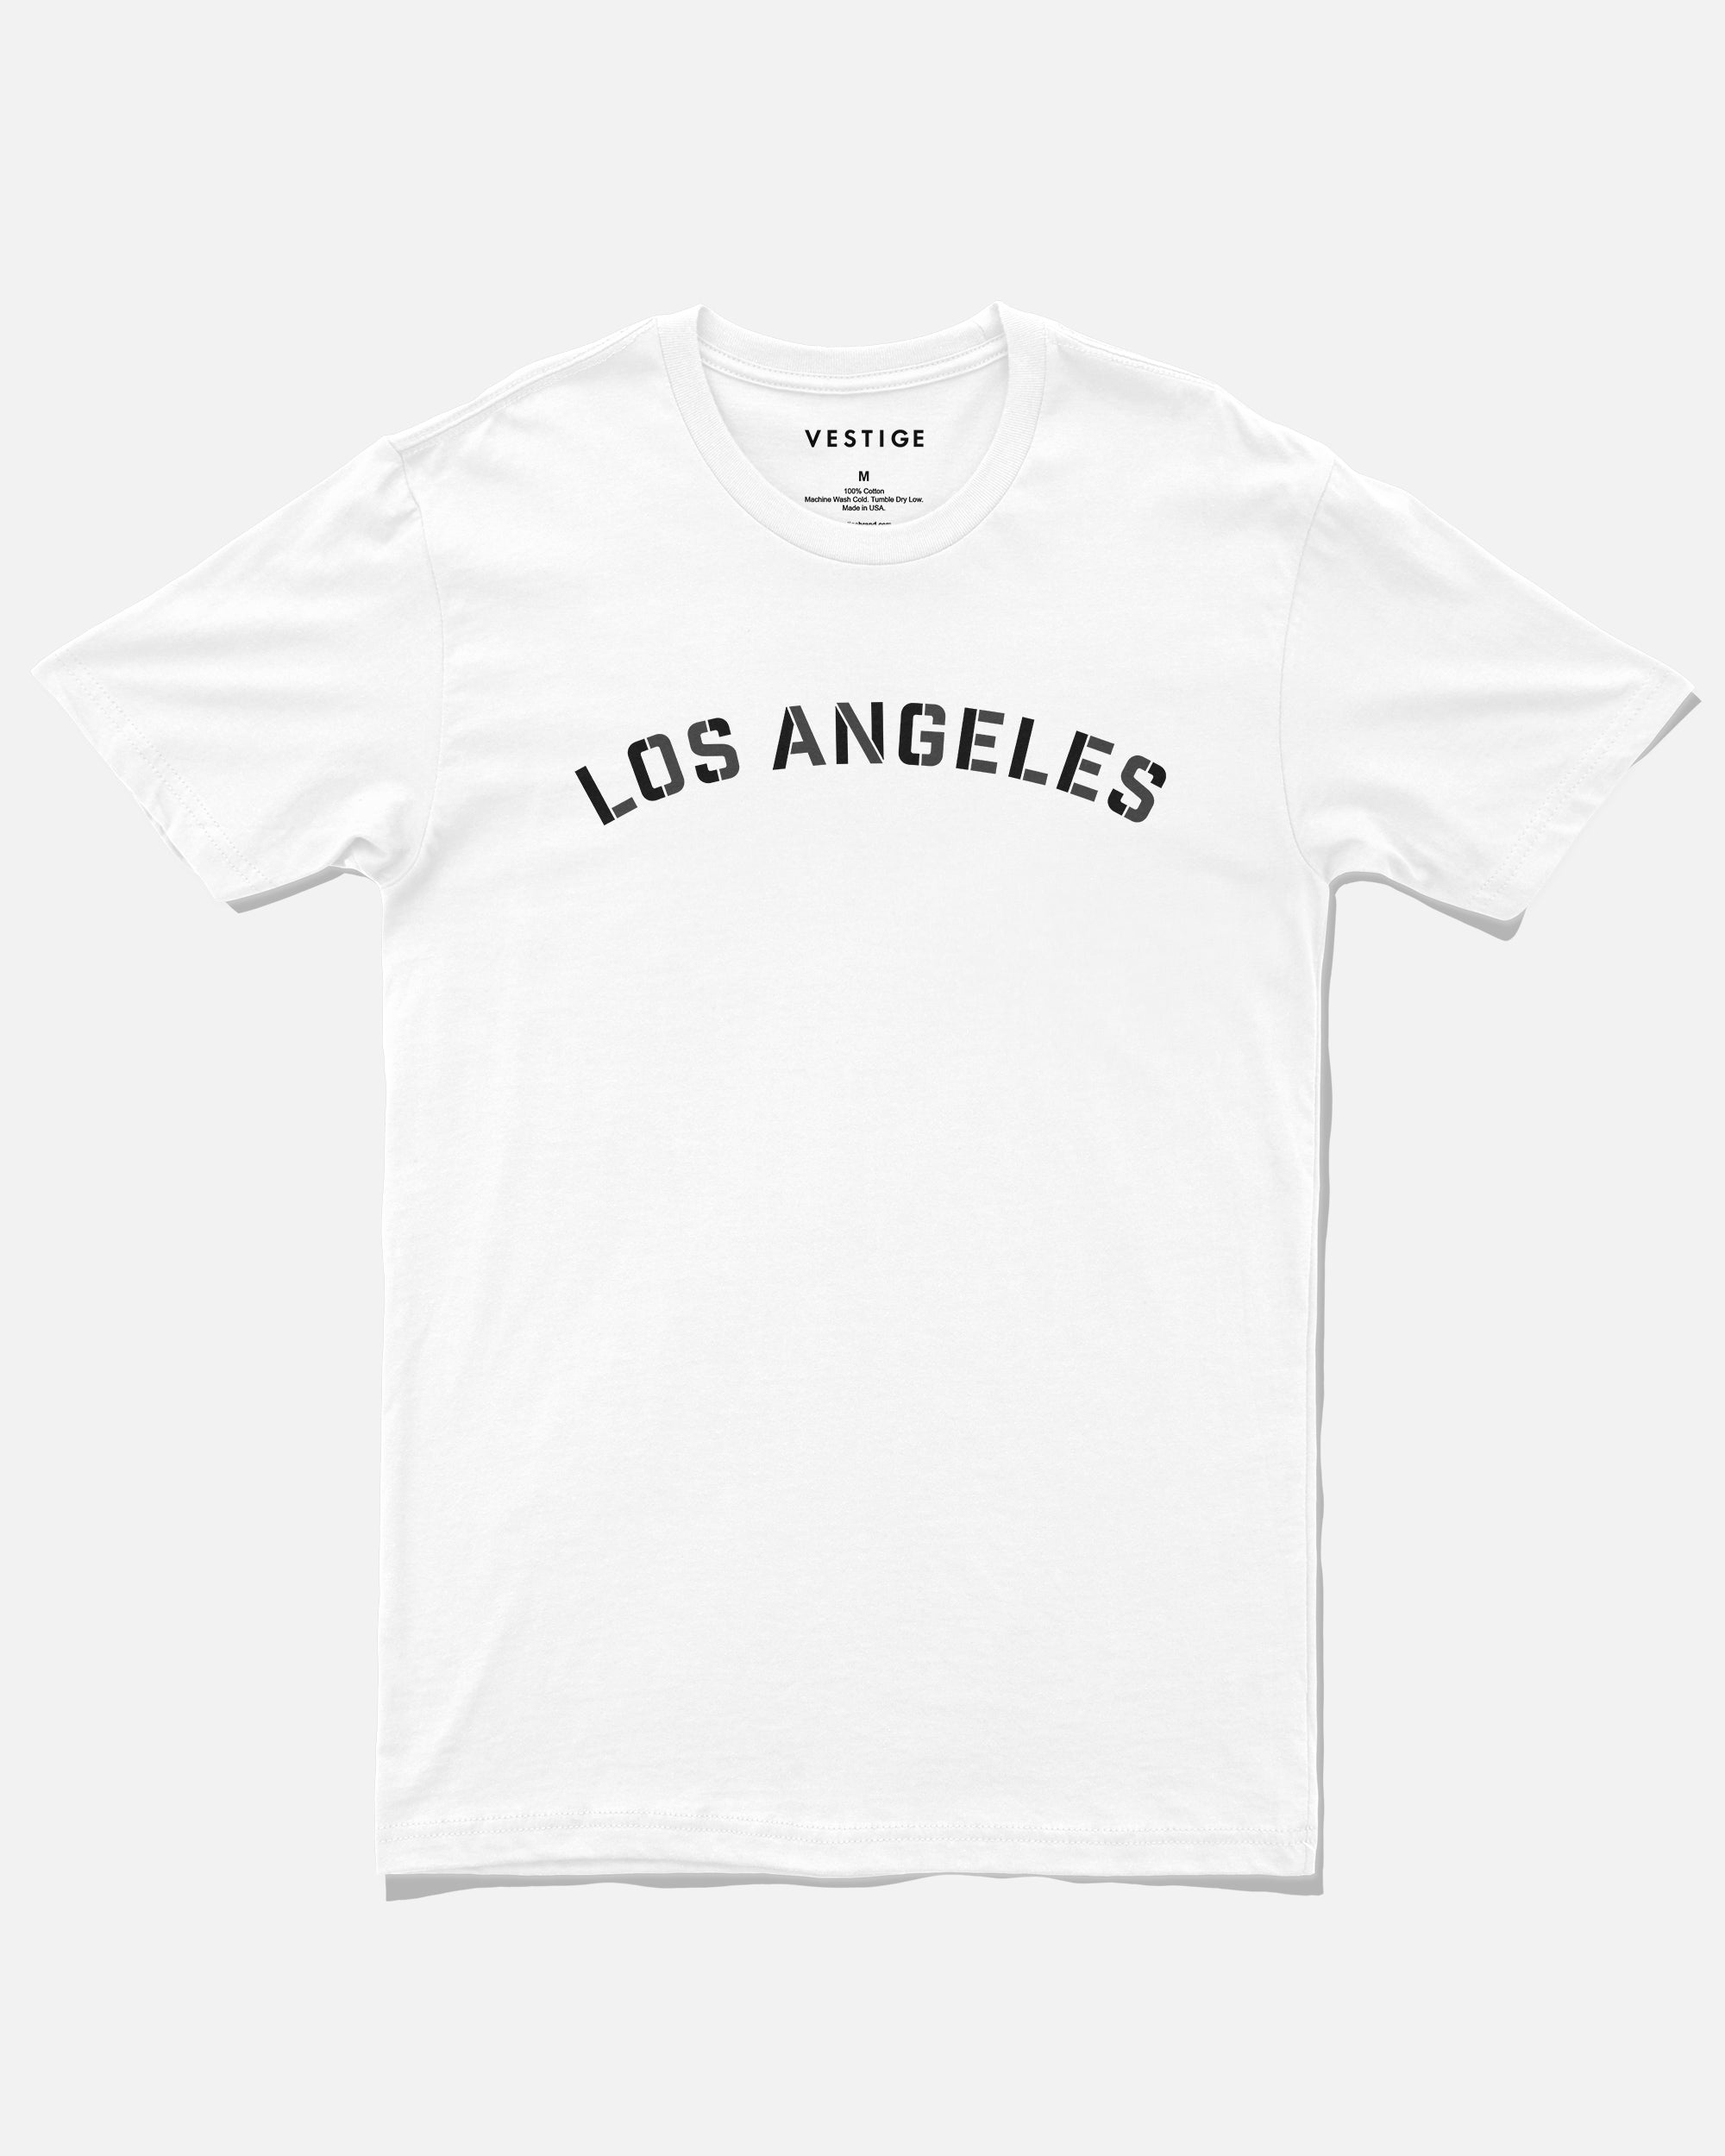 Los Angeles Industry Tee, White – VESTIGE